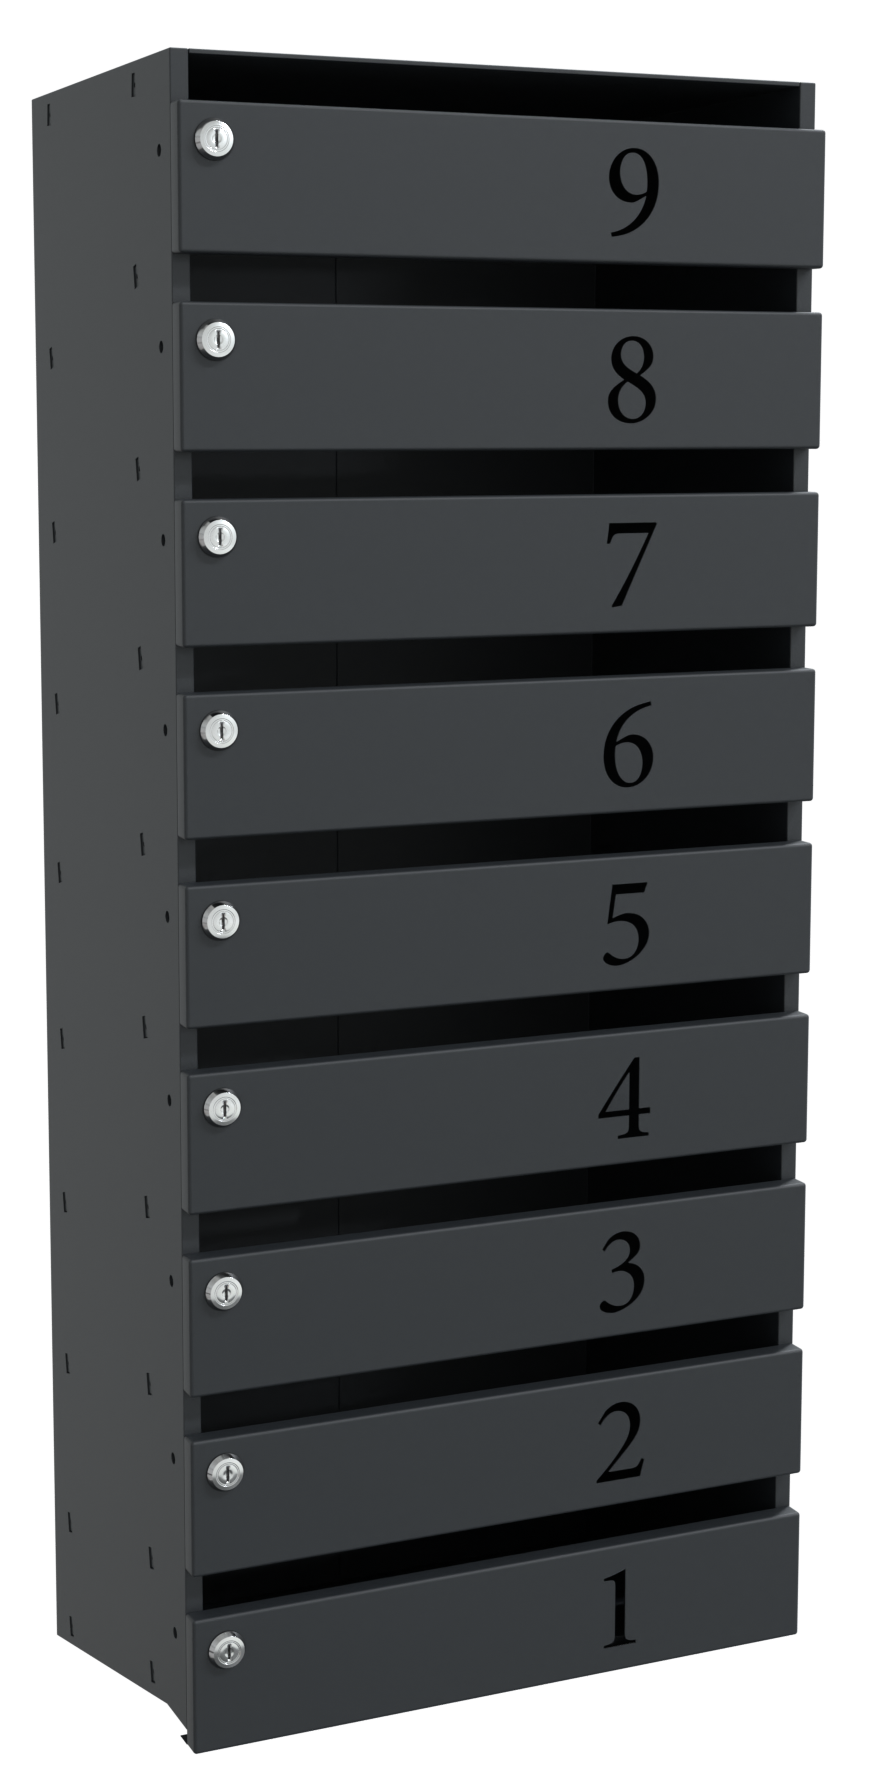 Почтовый ящик Святогор-9, 9 секций групповой многосекционный